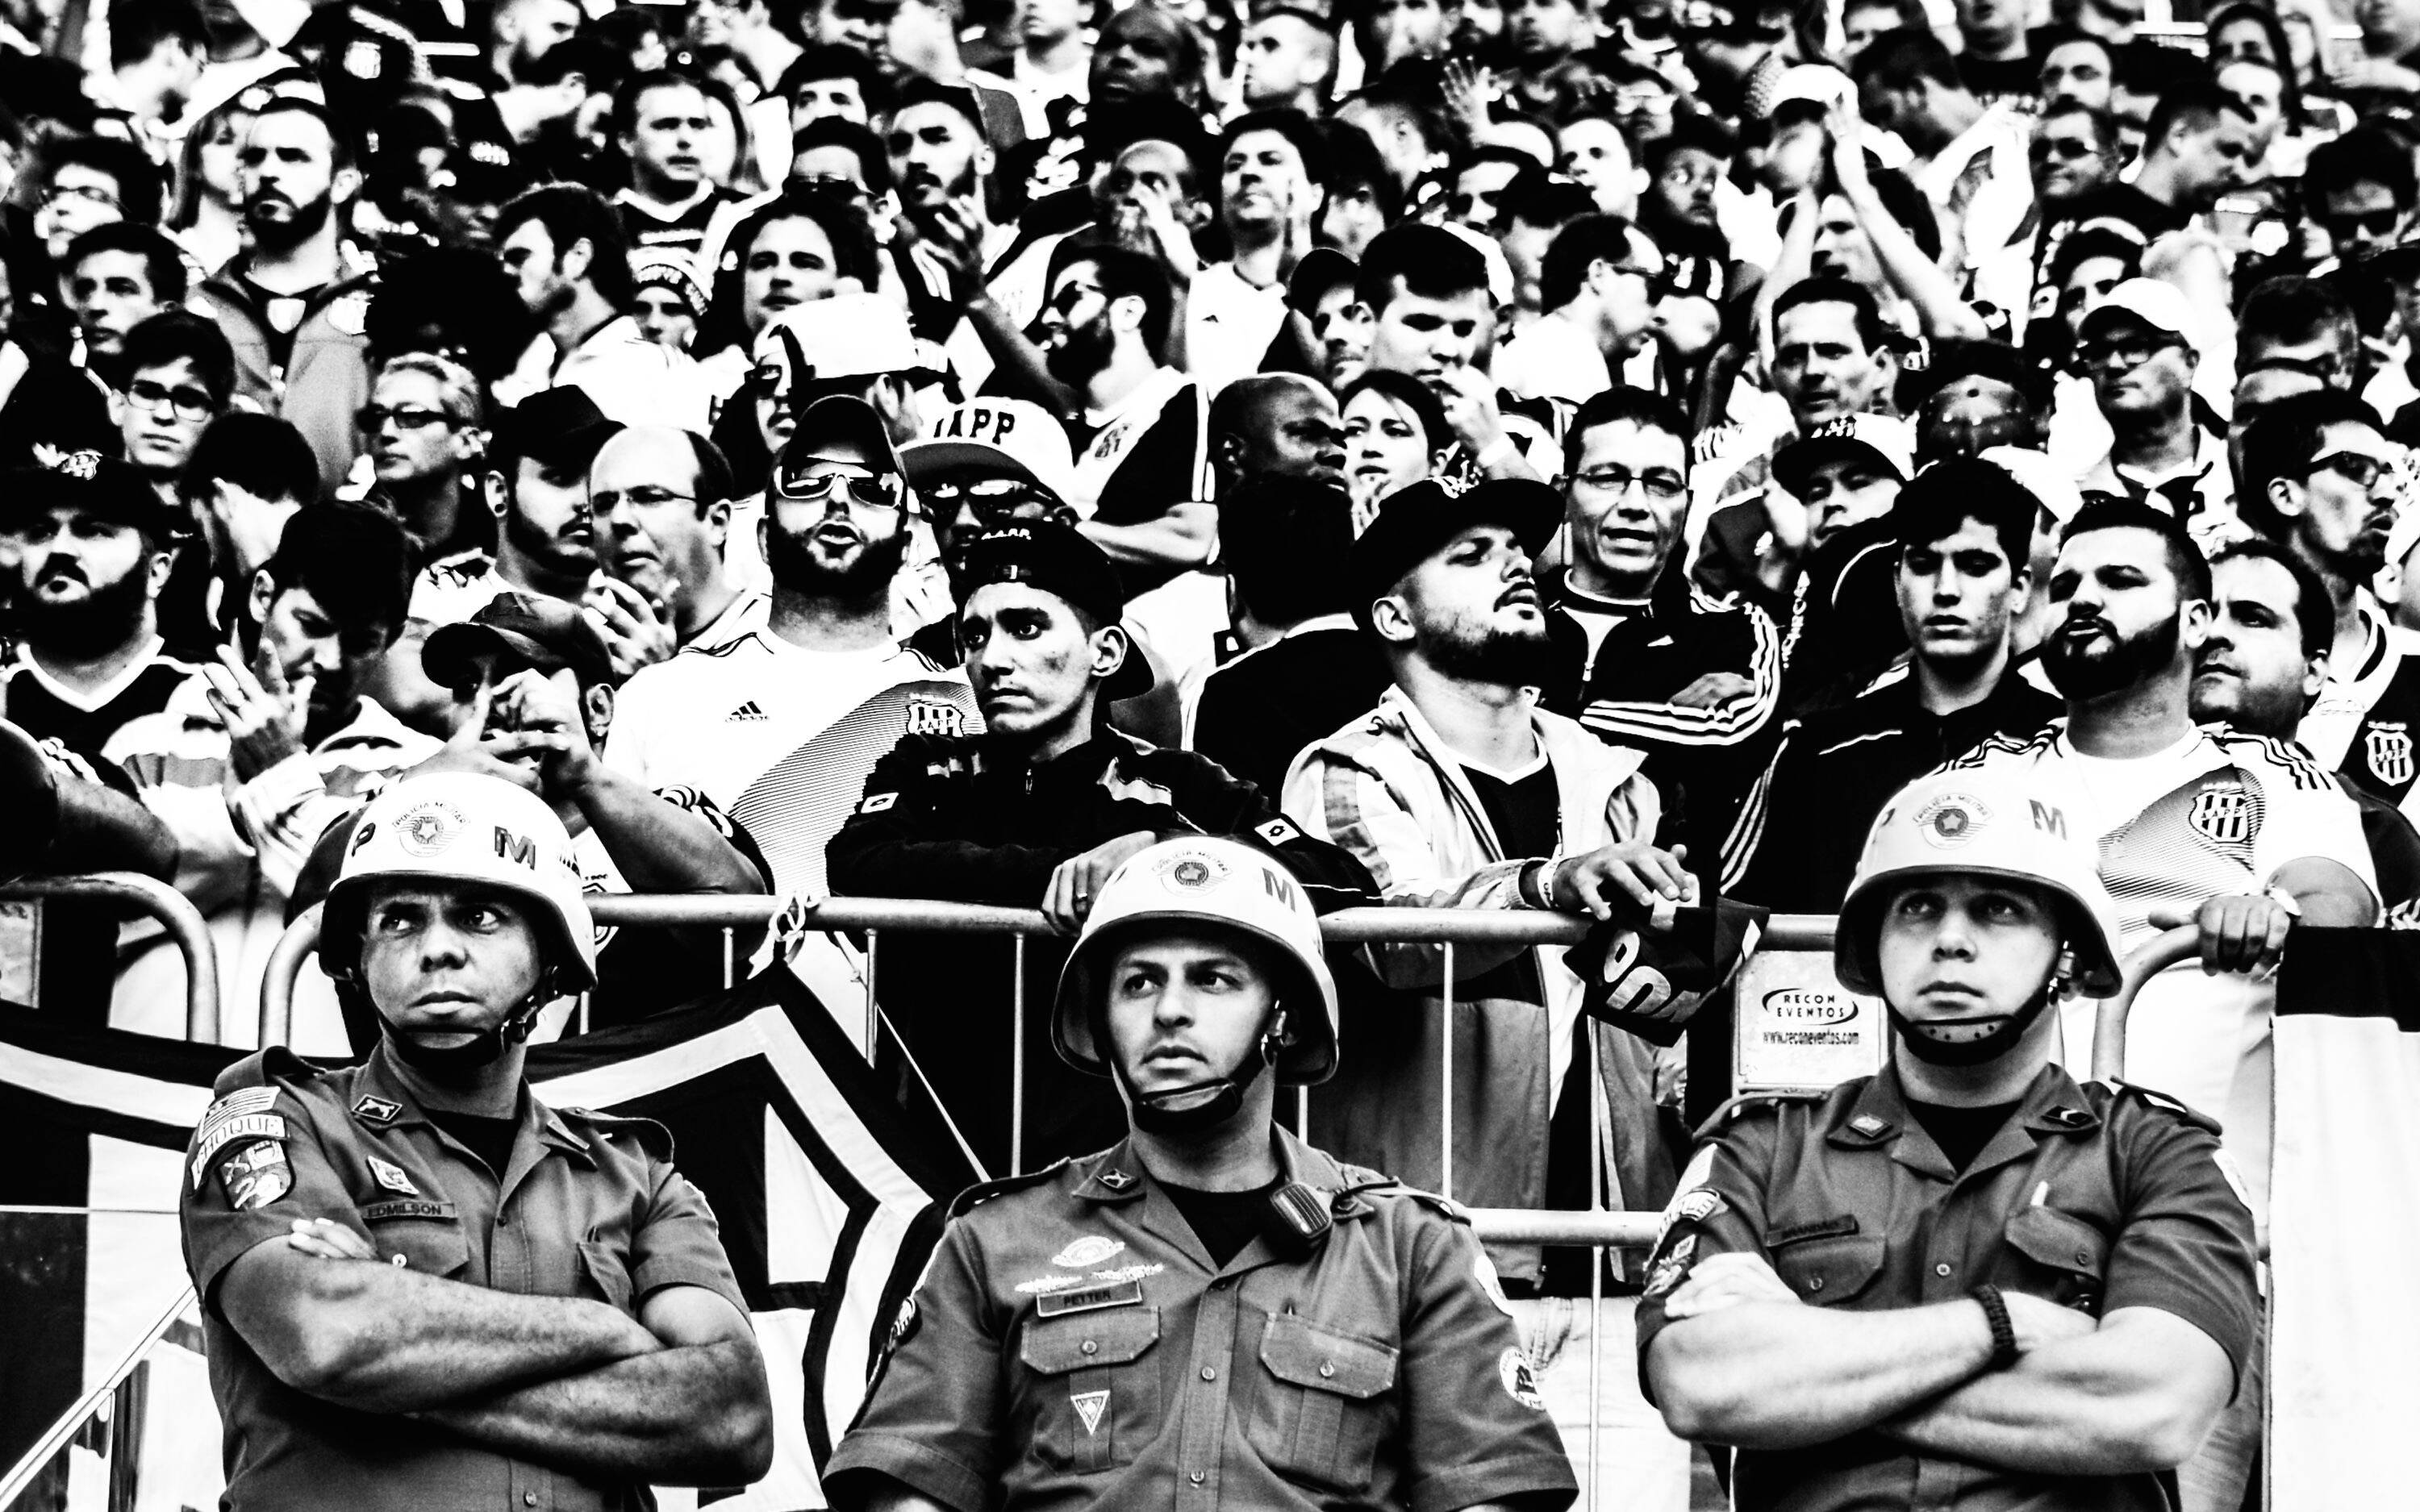 Fazendo a segurança em estádio de futebol - Segundo Batalhão de Choque - Polícia Militar do Estado de São Paulo. Foto: Major PM Luis Augusto Pacheco Ambar